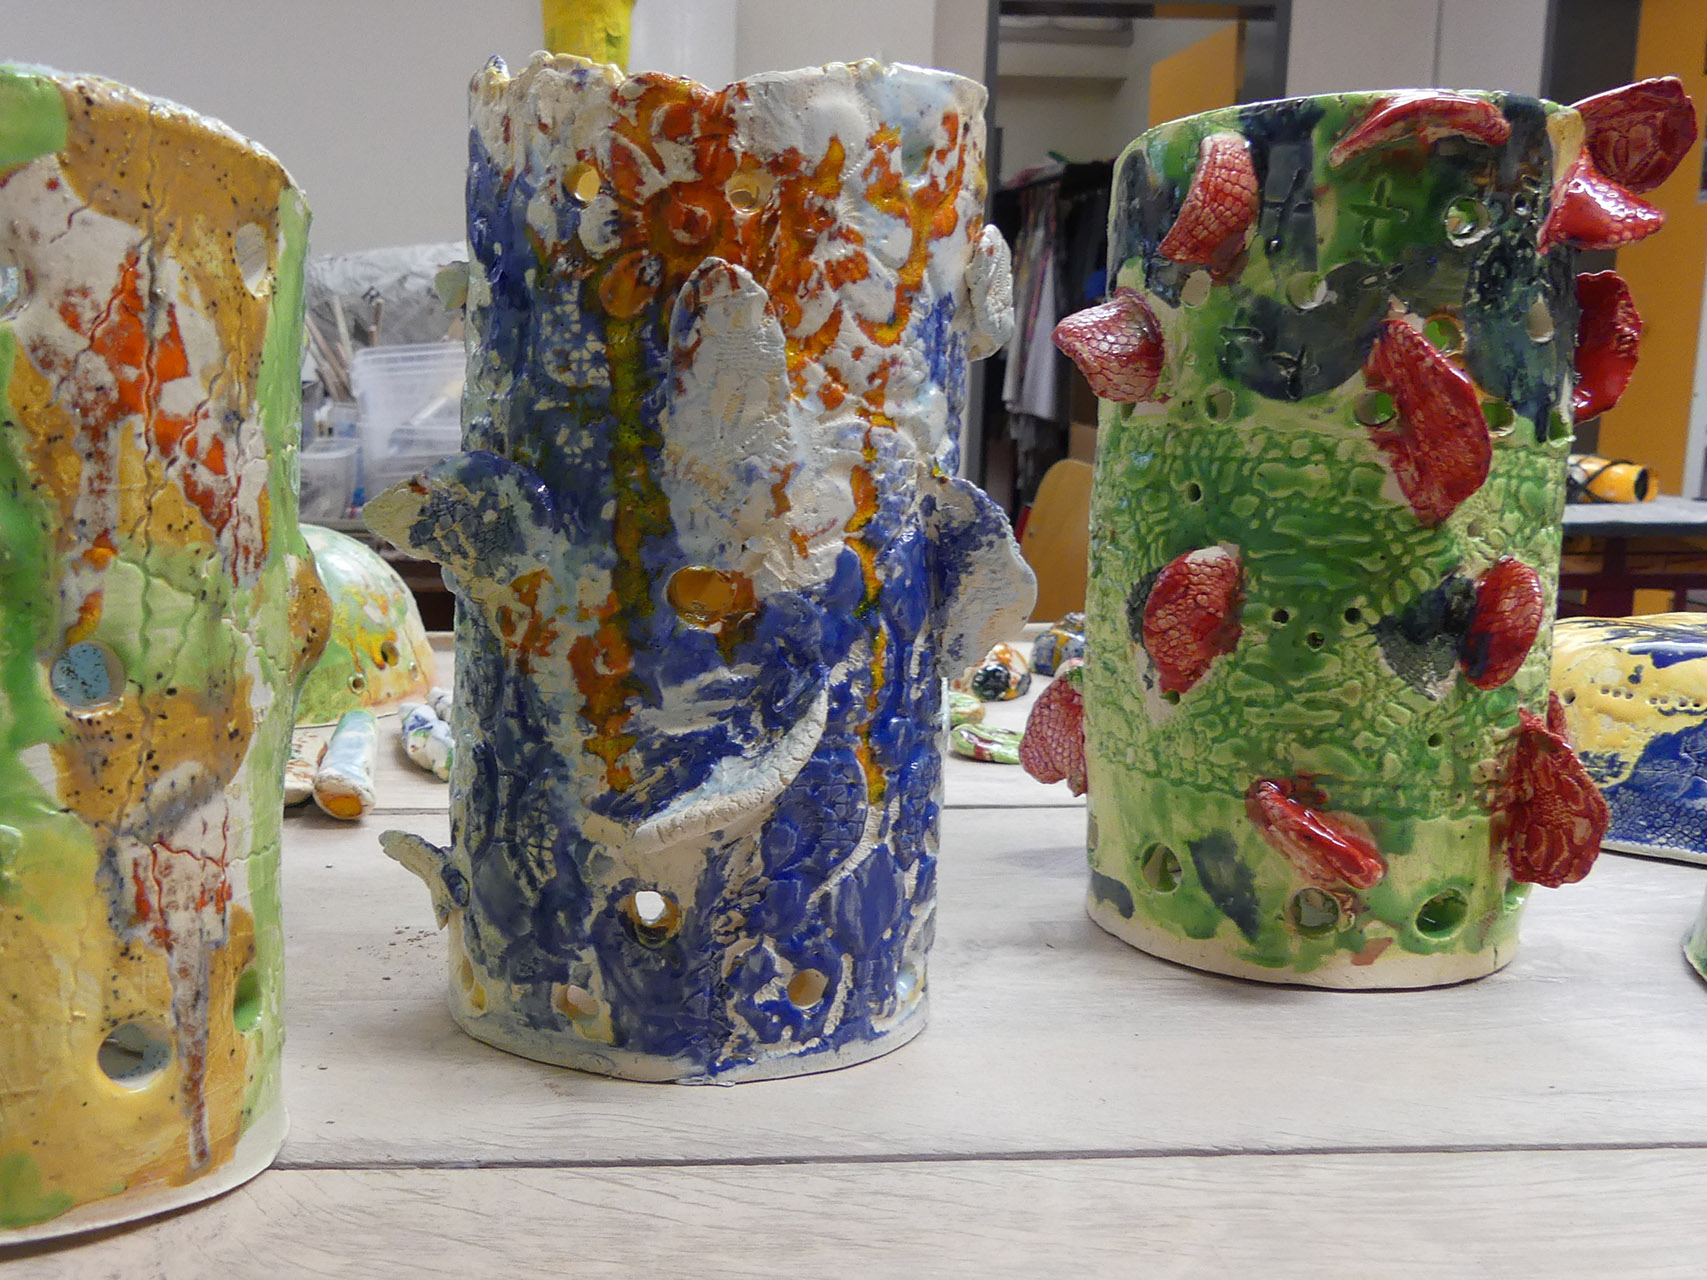 Im Bild sieht man drei vasen-ähnliche Gefäße. Sie sind sehr bunt und fantasie-voll gestaltet.